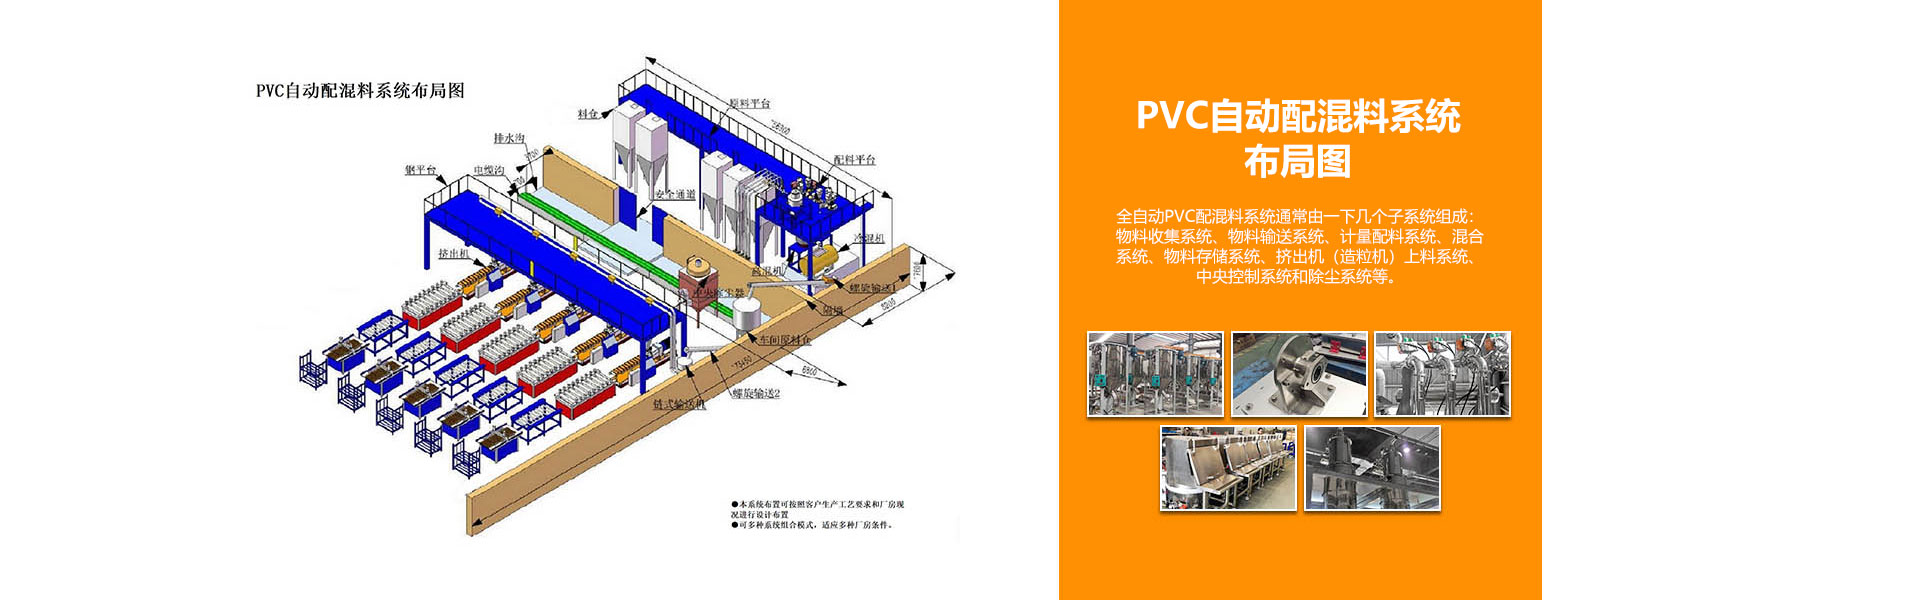 PVC自动配混料系统